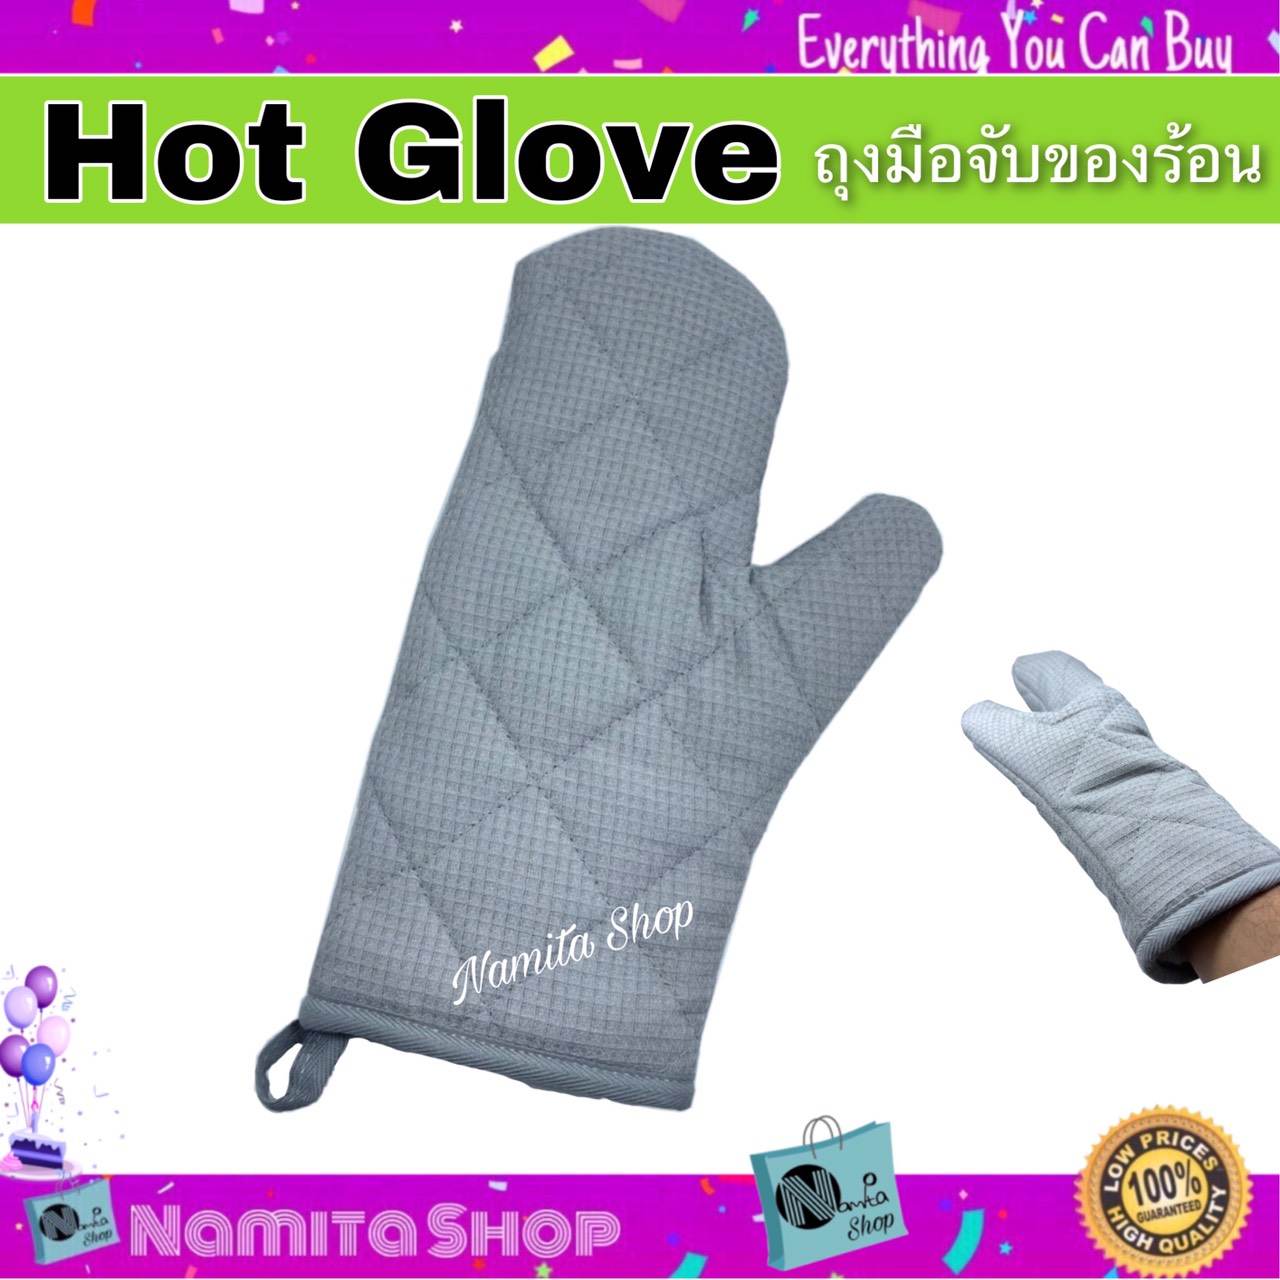 Namita Hot Glove ถุงมือ ถุงมือจับของร้อน ถุงมือไมโครเวฟ กันร้อน แบบผ้า 2 ชั้นอย่างดี จำนวน 1 ชิ้น